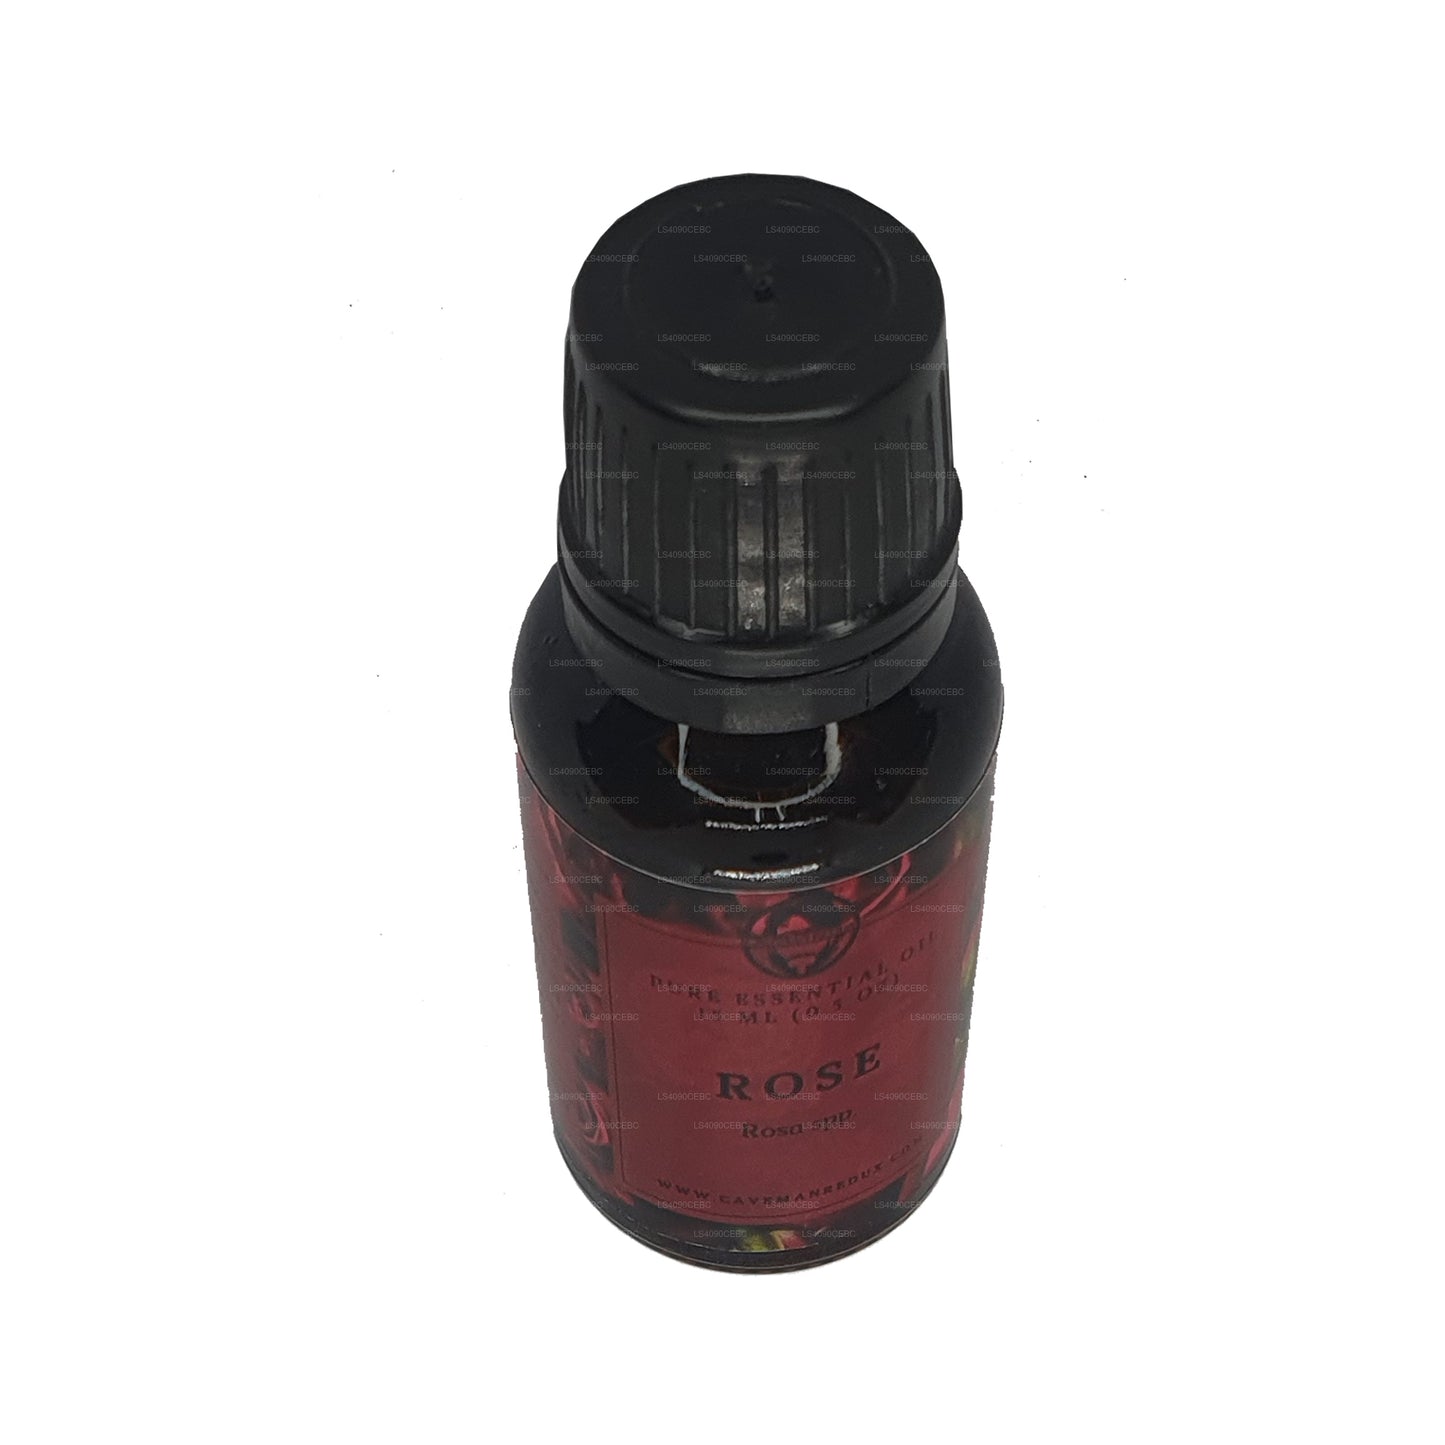 Lakpura Rose Essential Oil (15ml)